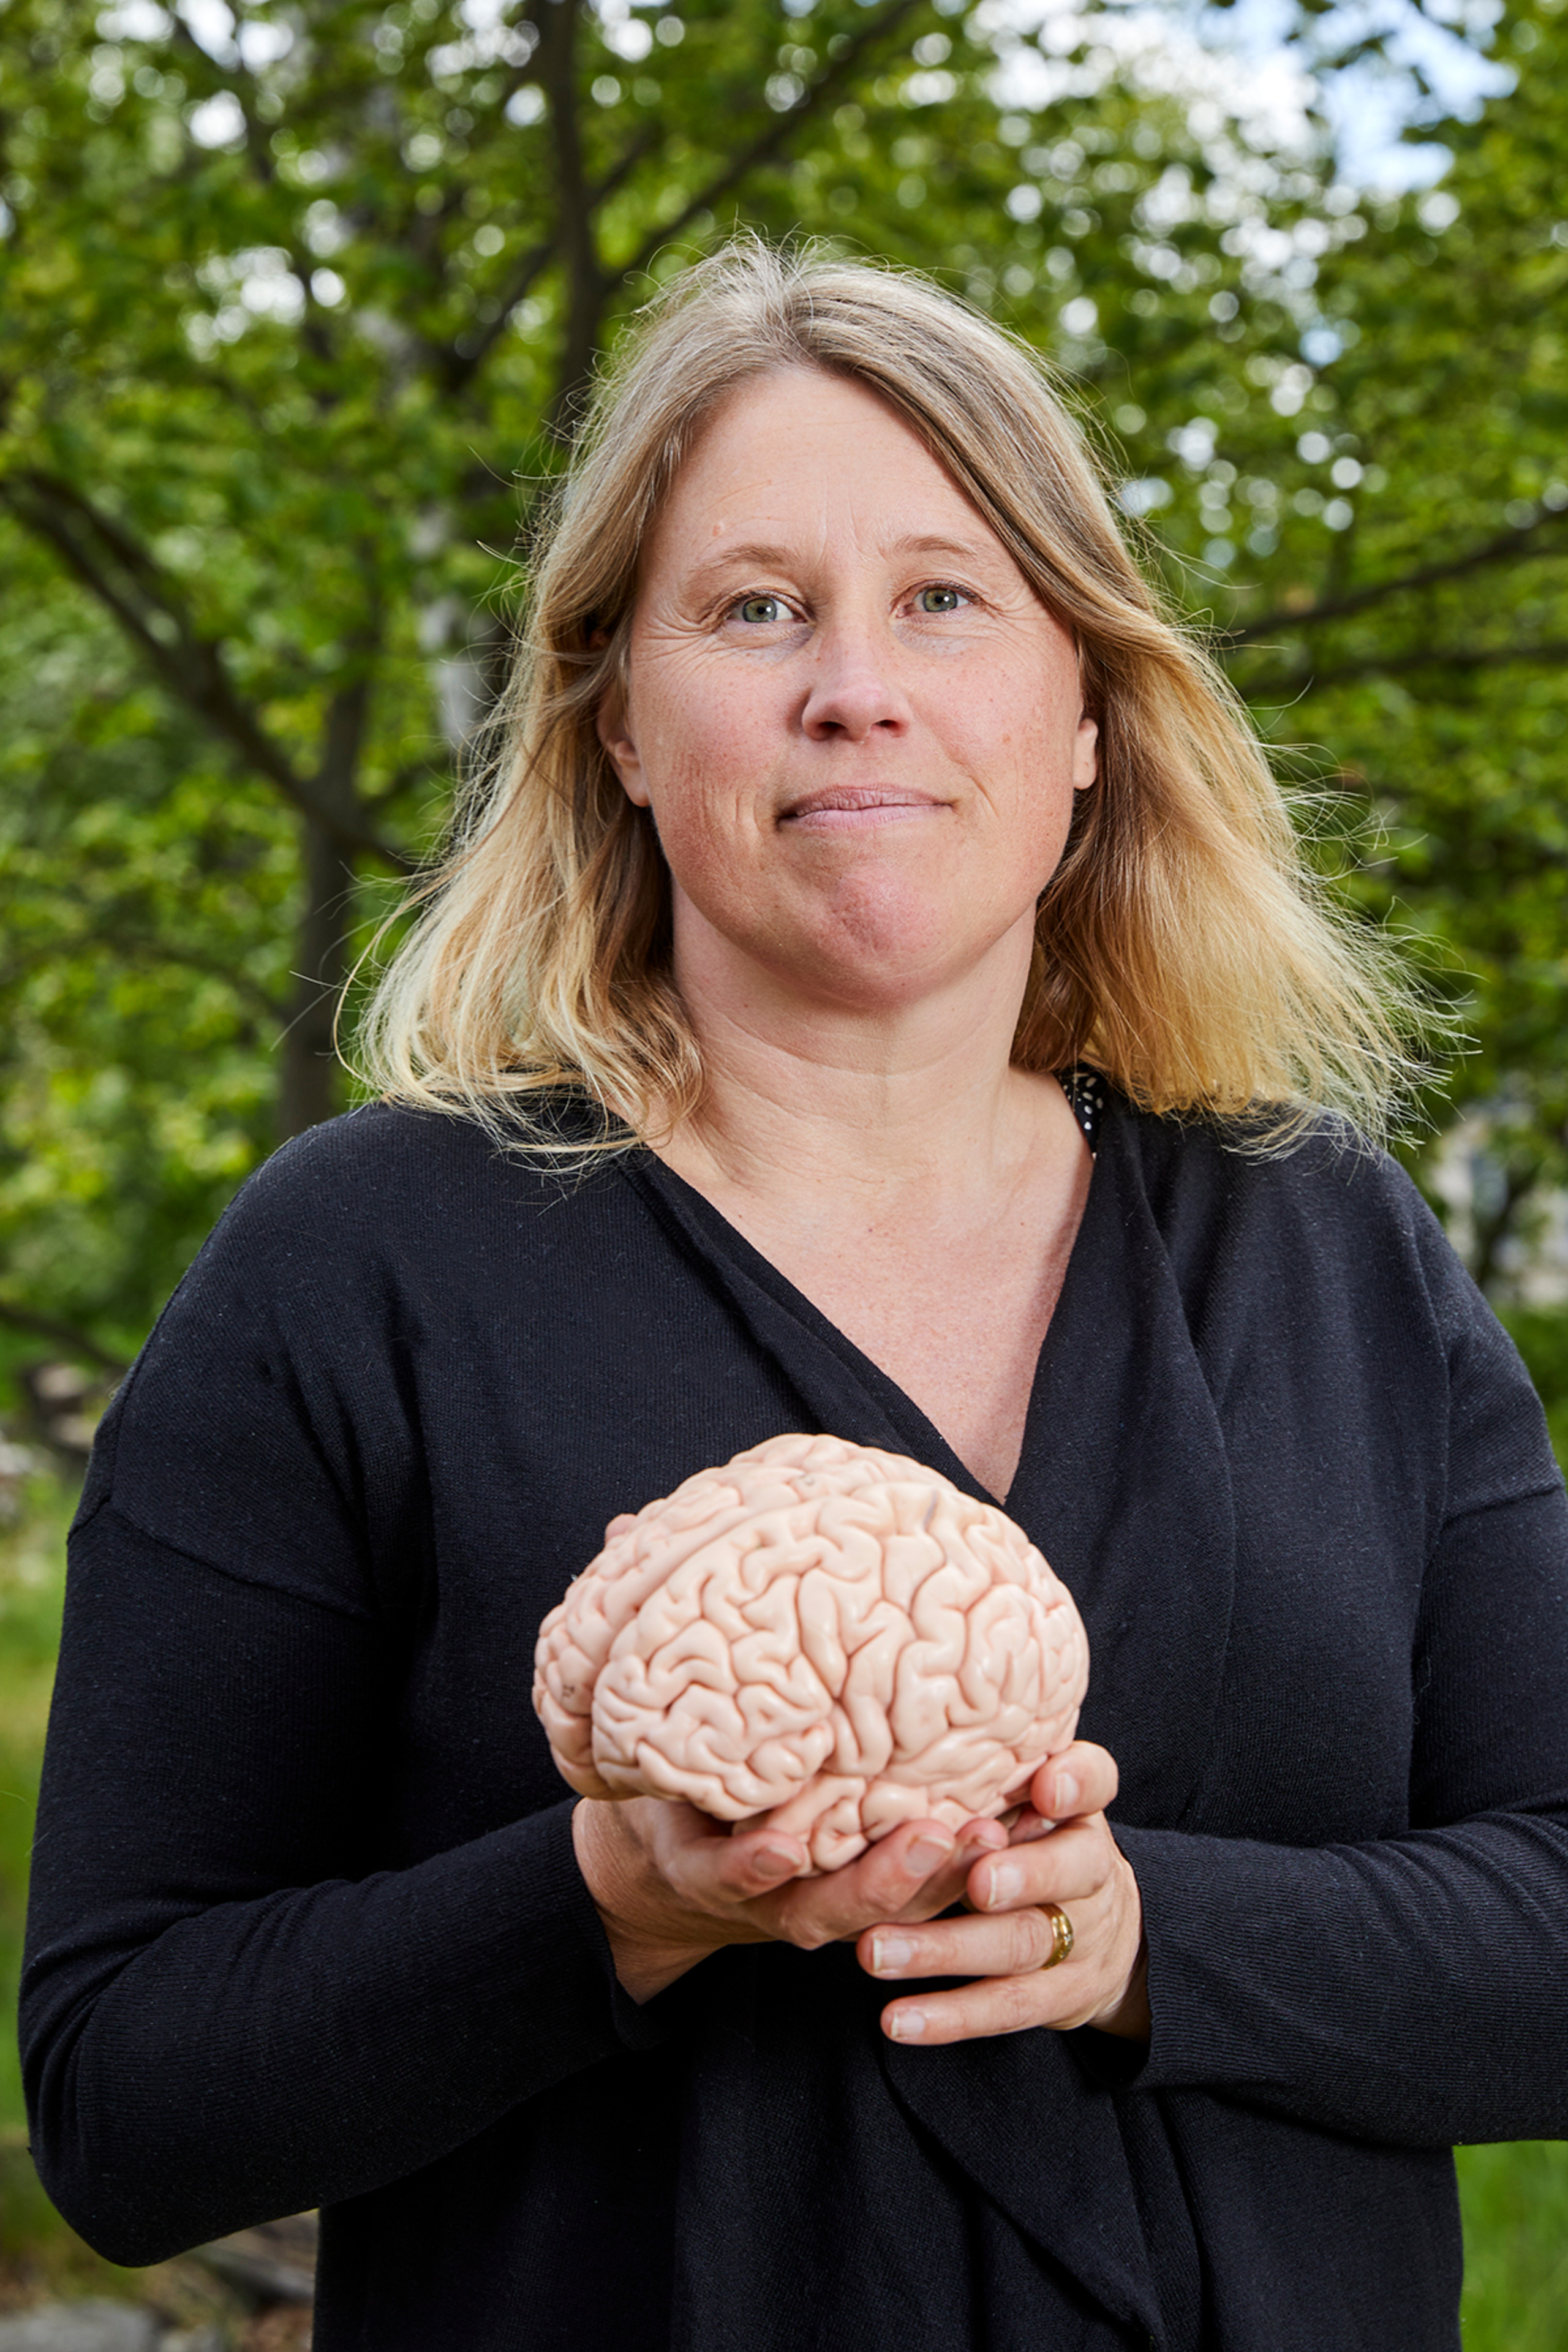 Maria Ekblom utomhus med en hjärna i handen